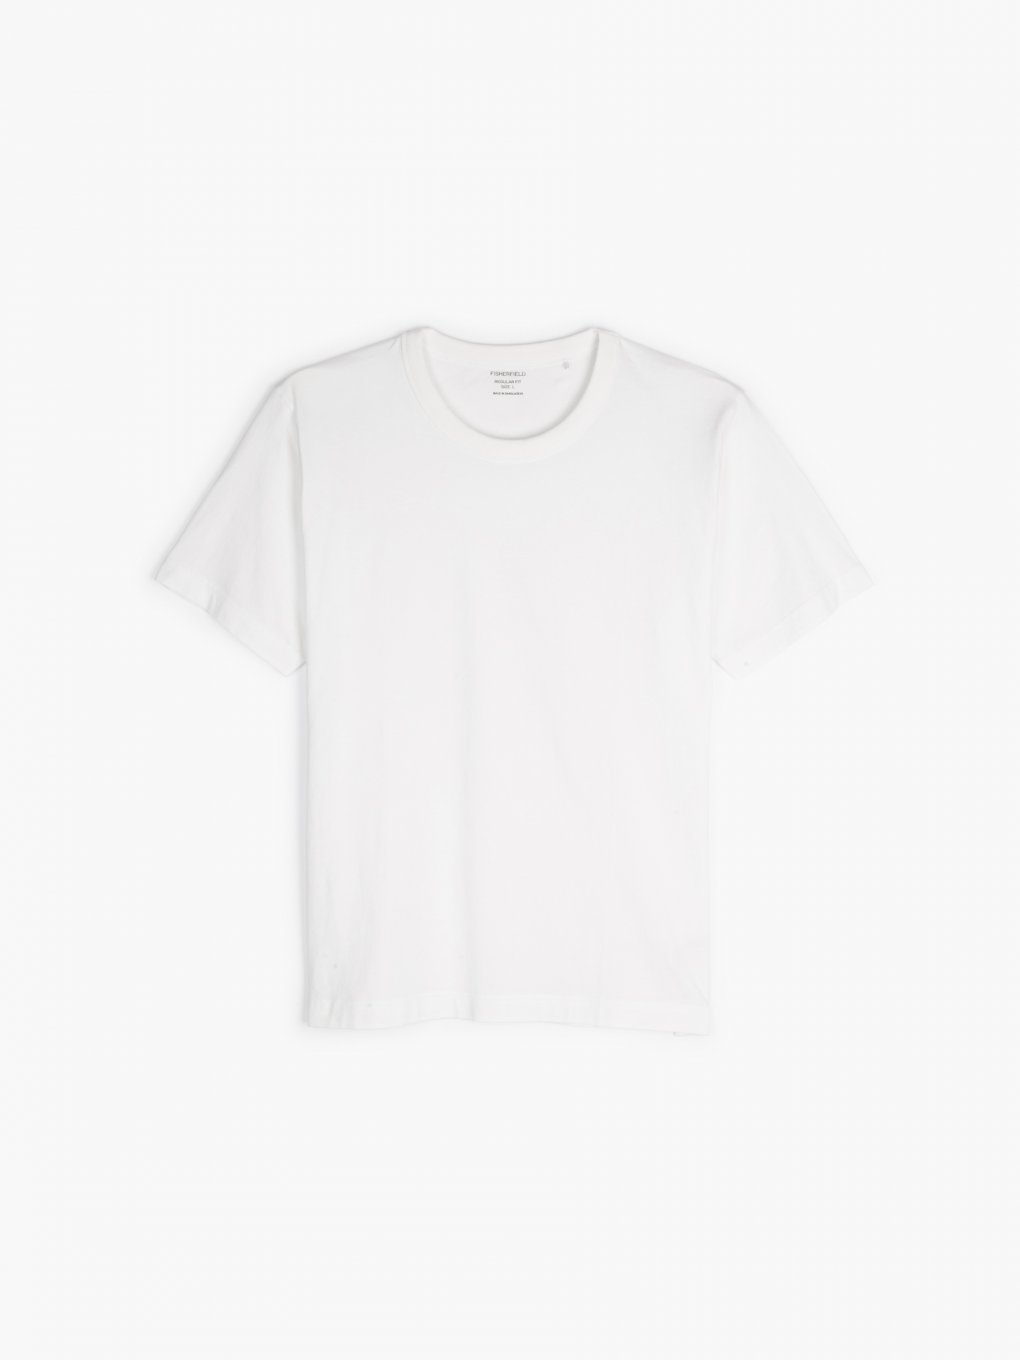 Plain t-shirt